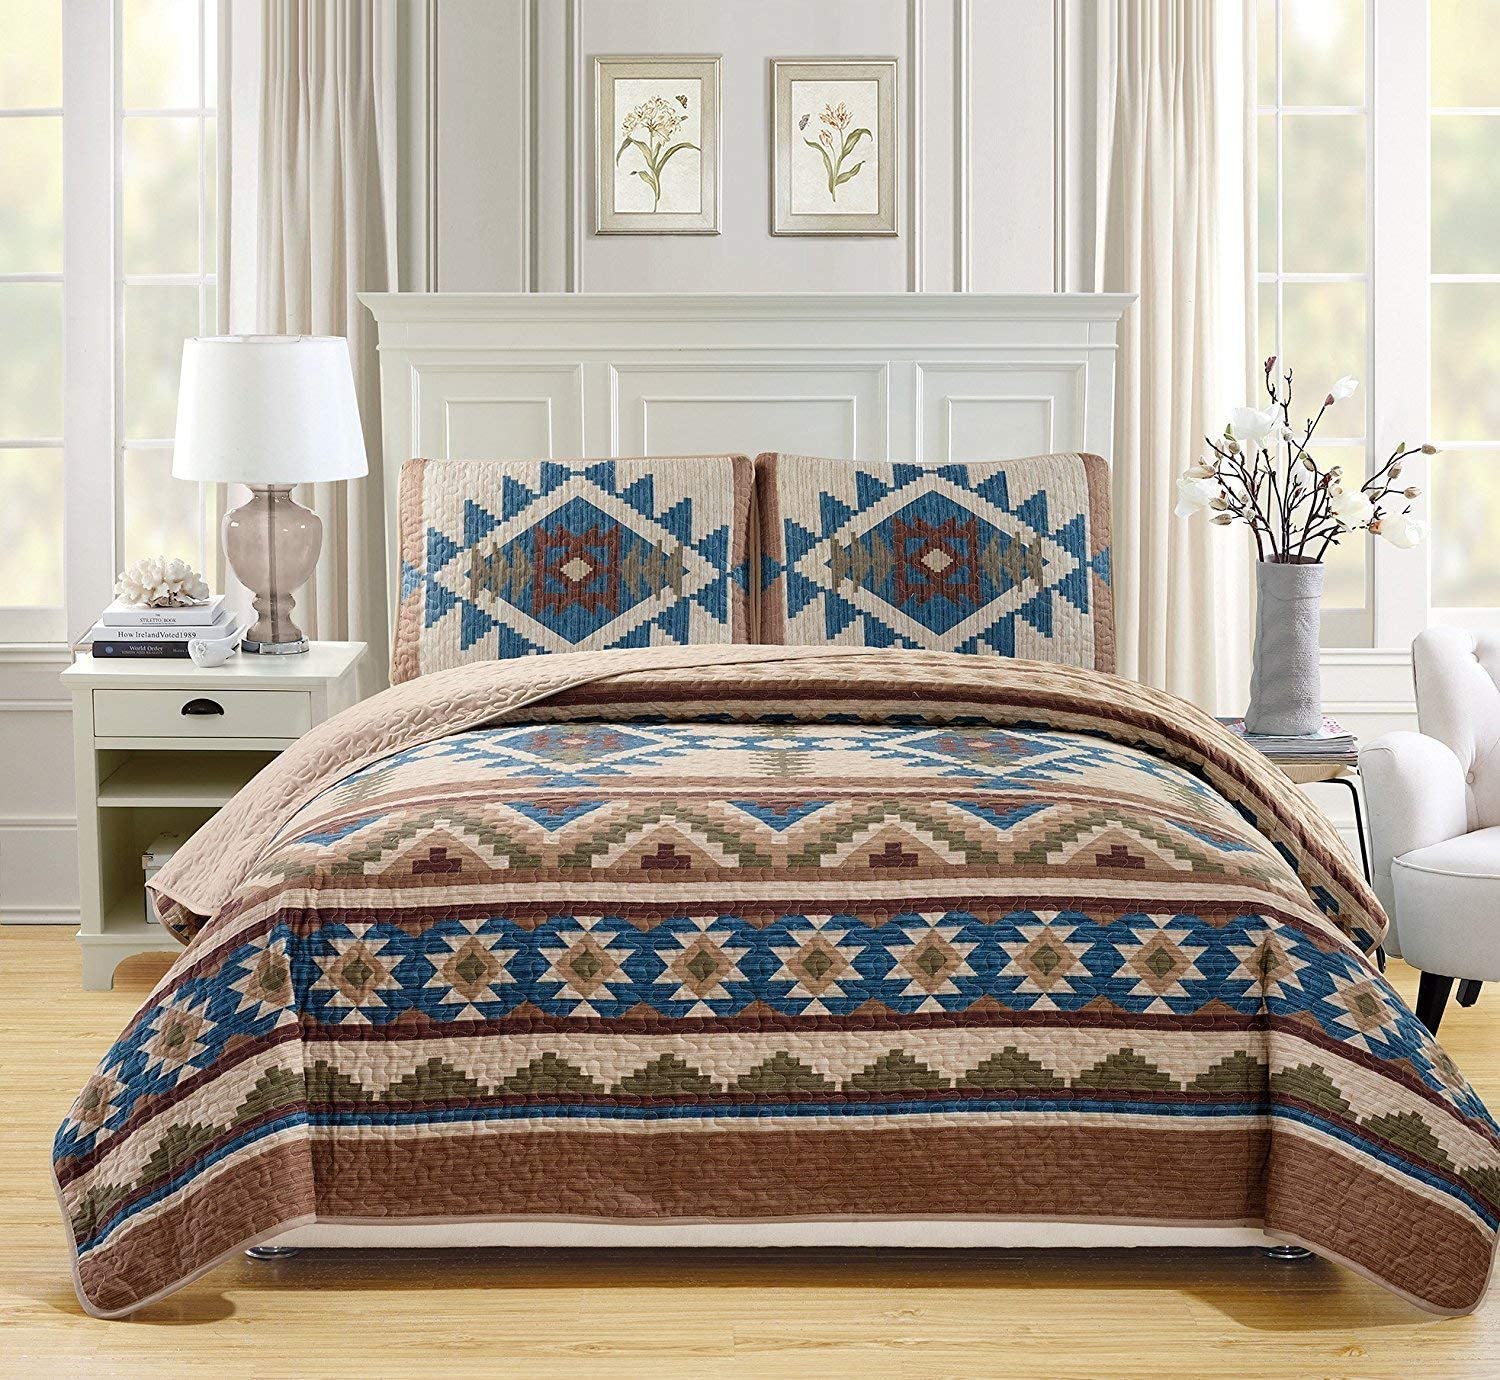 Southwest Design Bedspreads and Bedding